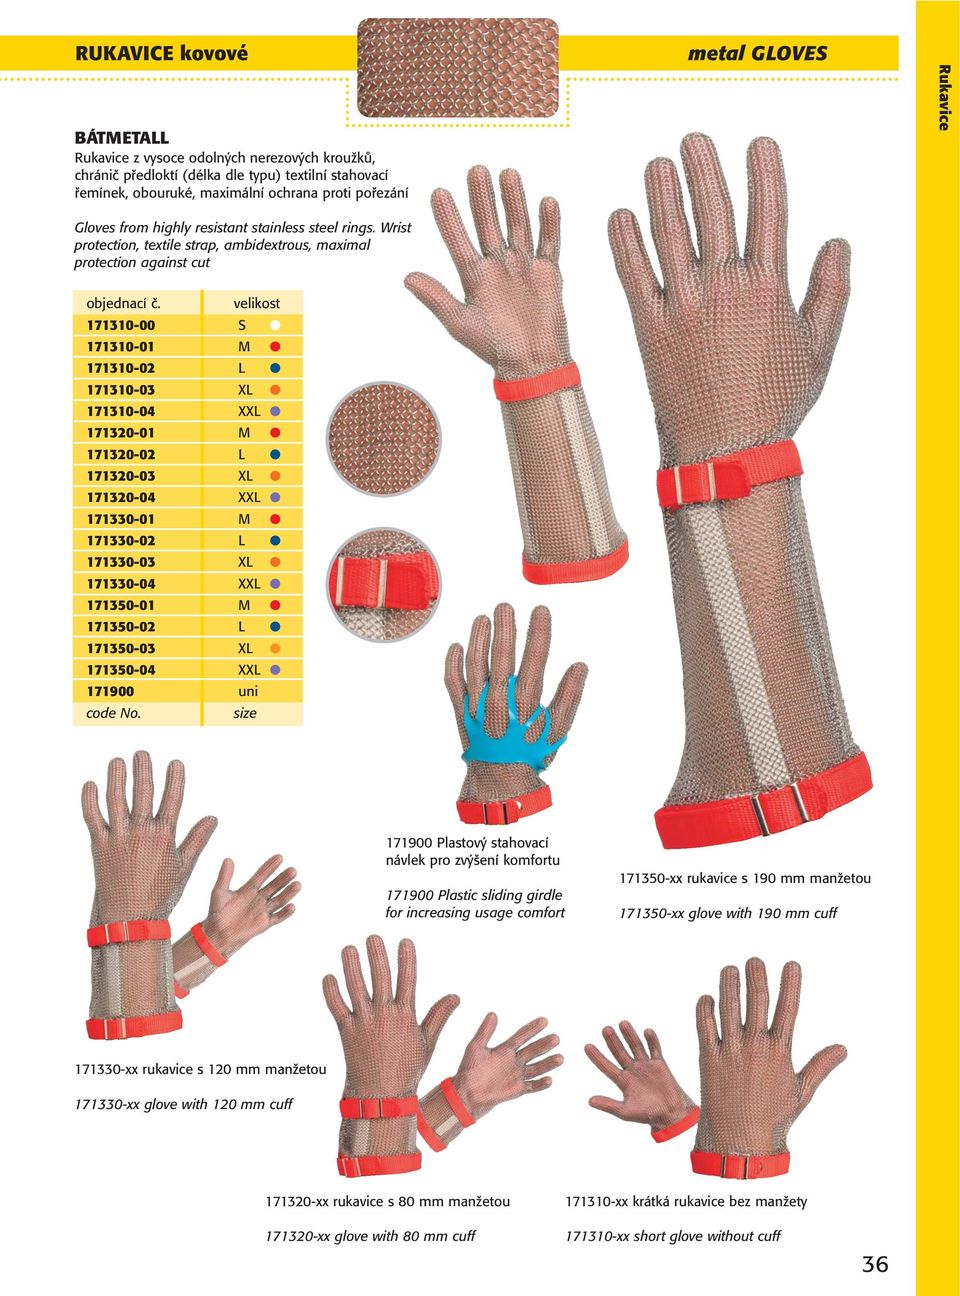 Wrist protection, textile strap, ambidextrous, maximal protection against cut 171310-00 S 171310-01 M 171310-02 L 171310-03 XL 171310-04 XXL 171320-01 M 171320-02 L 171320-03 XL 171320-04 XXL